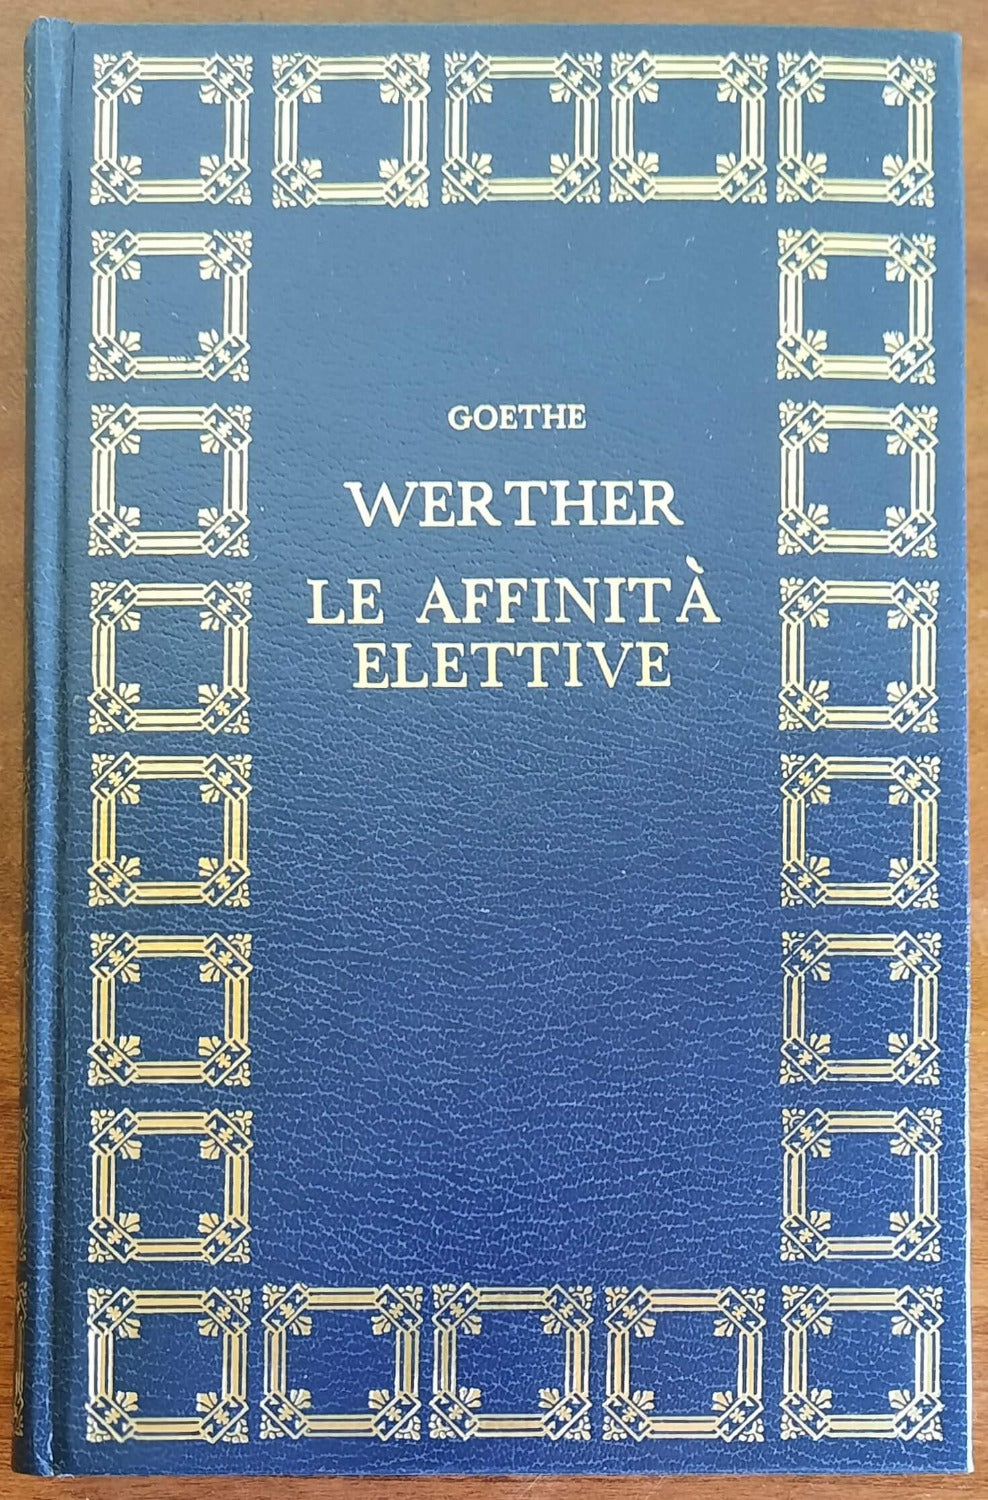 I dolori del giovane Werther - Le affinità elettive - di J.W. Goethe